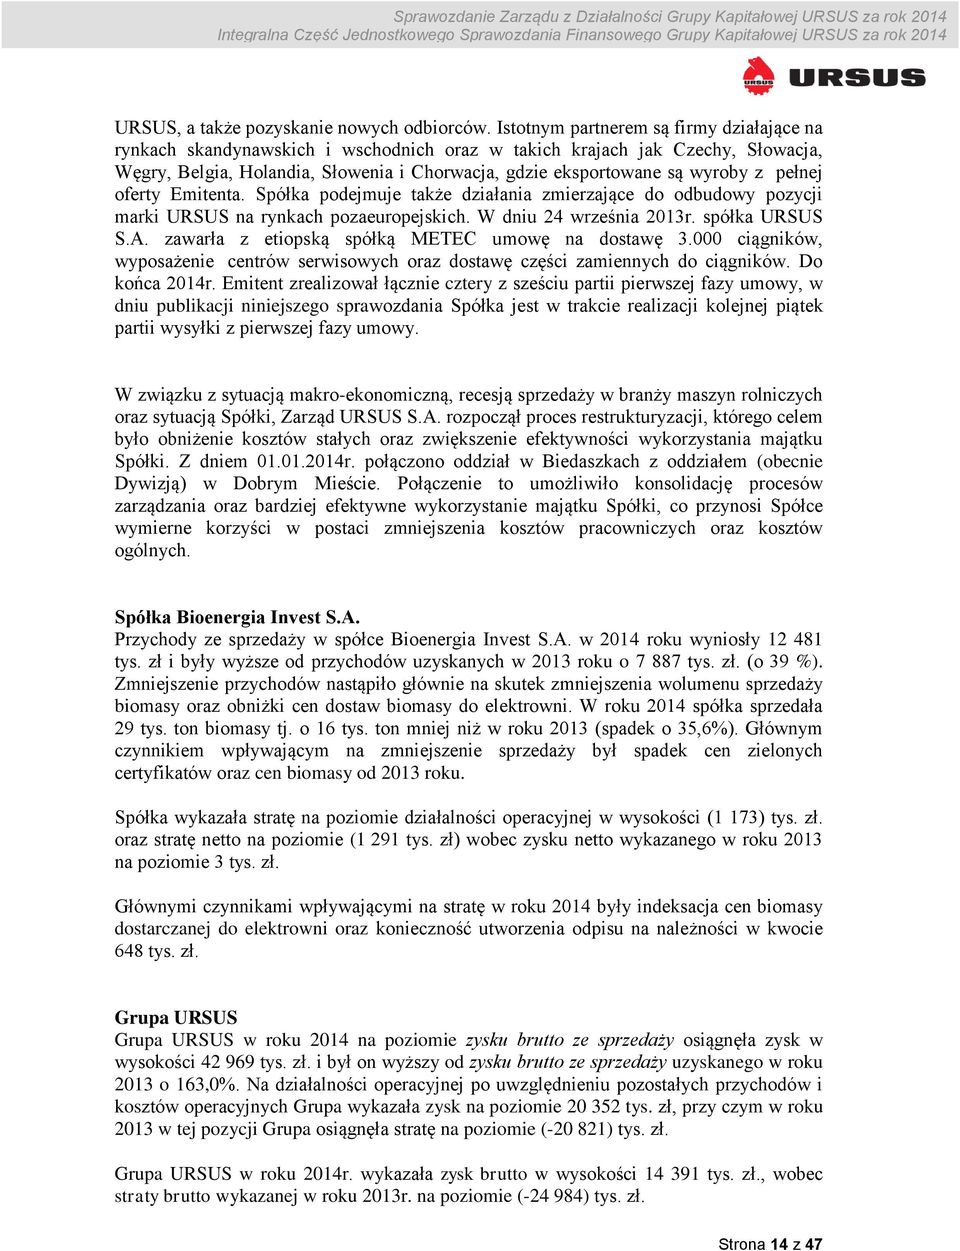 pełnej oferty Emitenta. Spółka podejmuje także działania zmierzające do odbudowy pozycji marki URSUS na rynkach pozaeuropejskich. W dniu 24 września 2013r. spółka URSUS S.A.